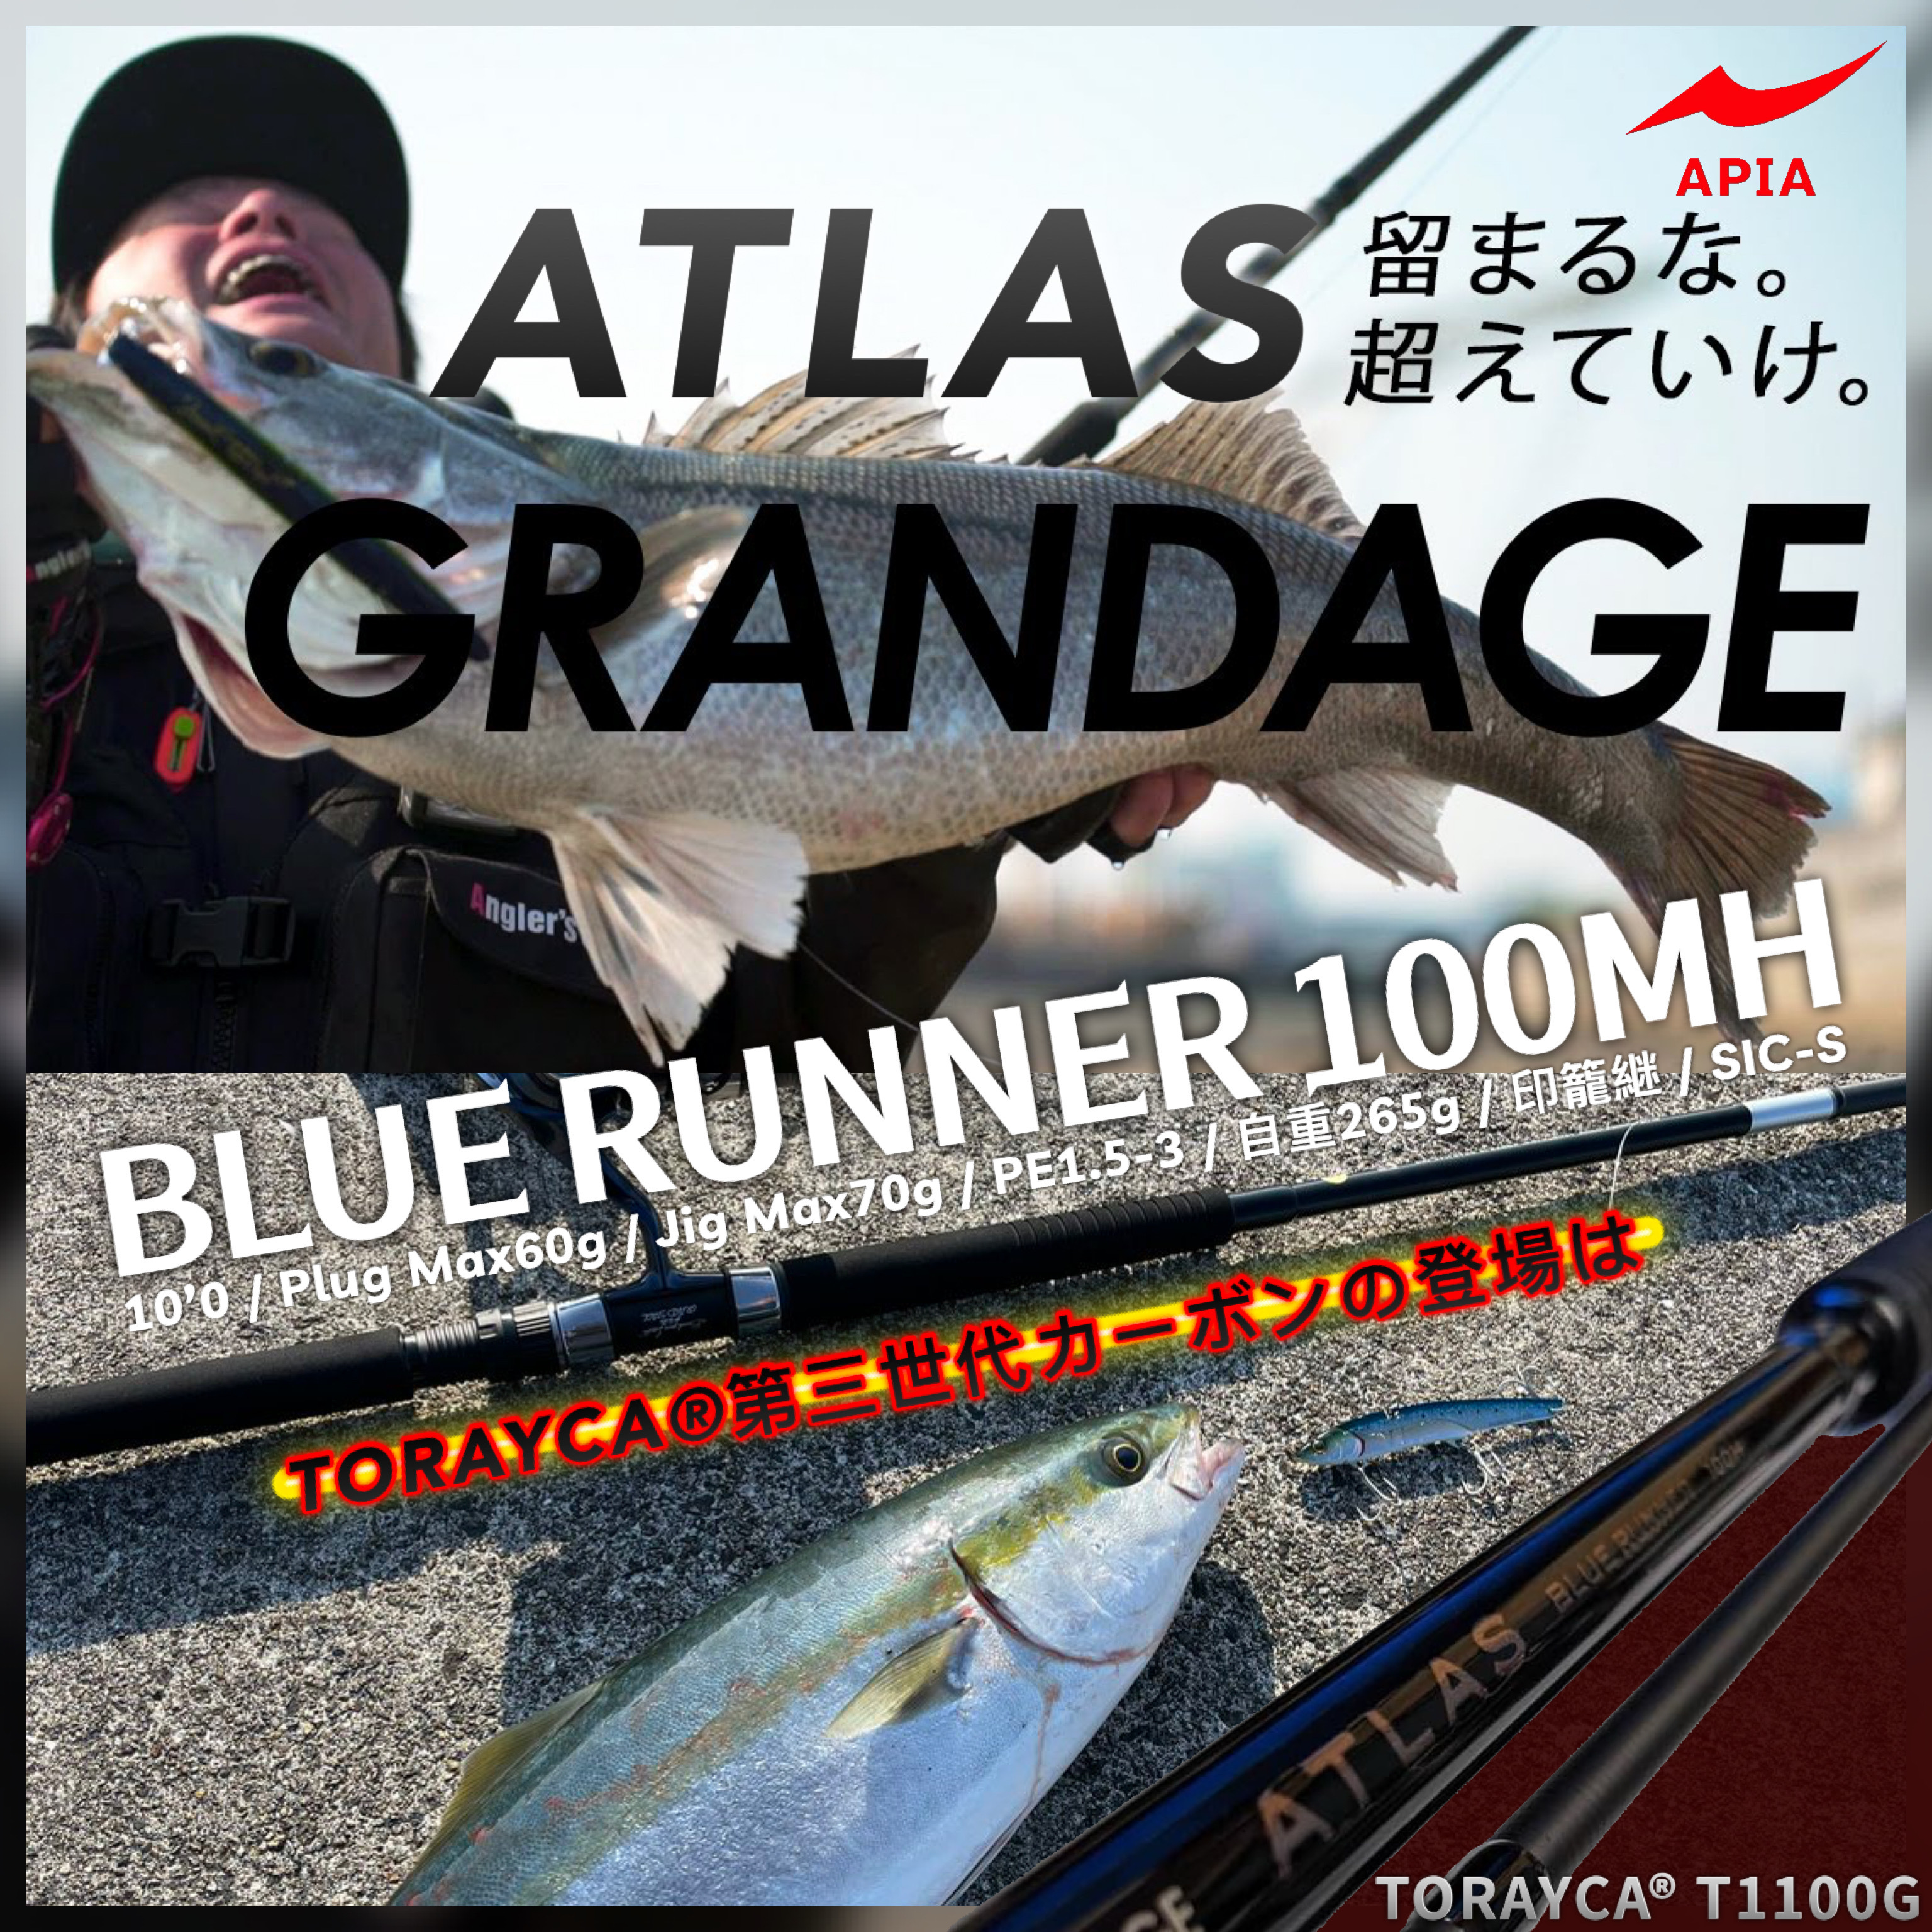 APIA GRANDAGE ATLAS BLUE RUNNER 100MH未記入保証書竿袋もあります